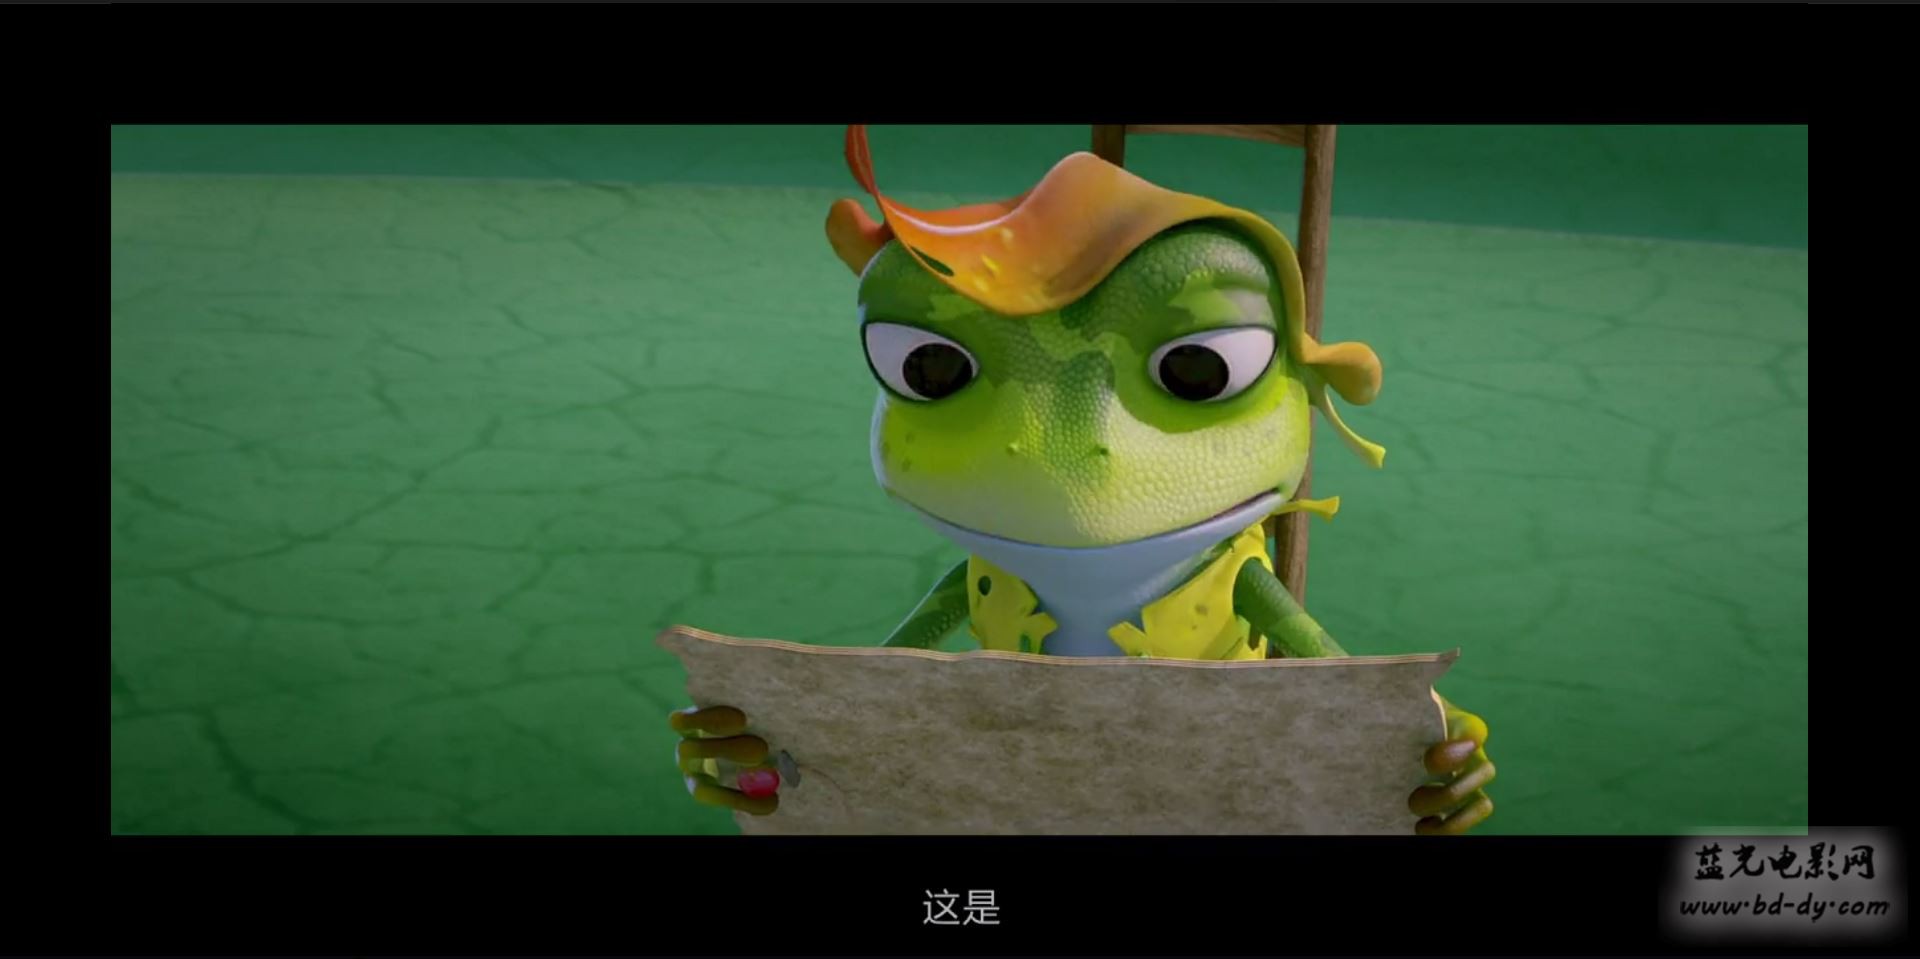 《青蛙王国之冰冻大冒险》2015国产动画冒险.HD720P.国语中字截图